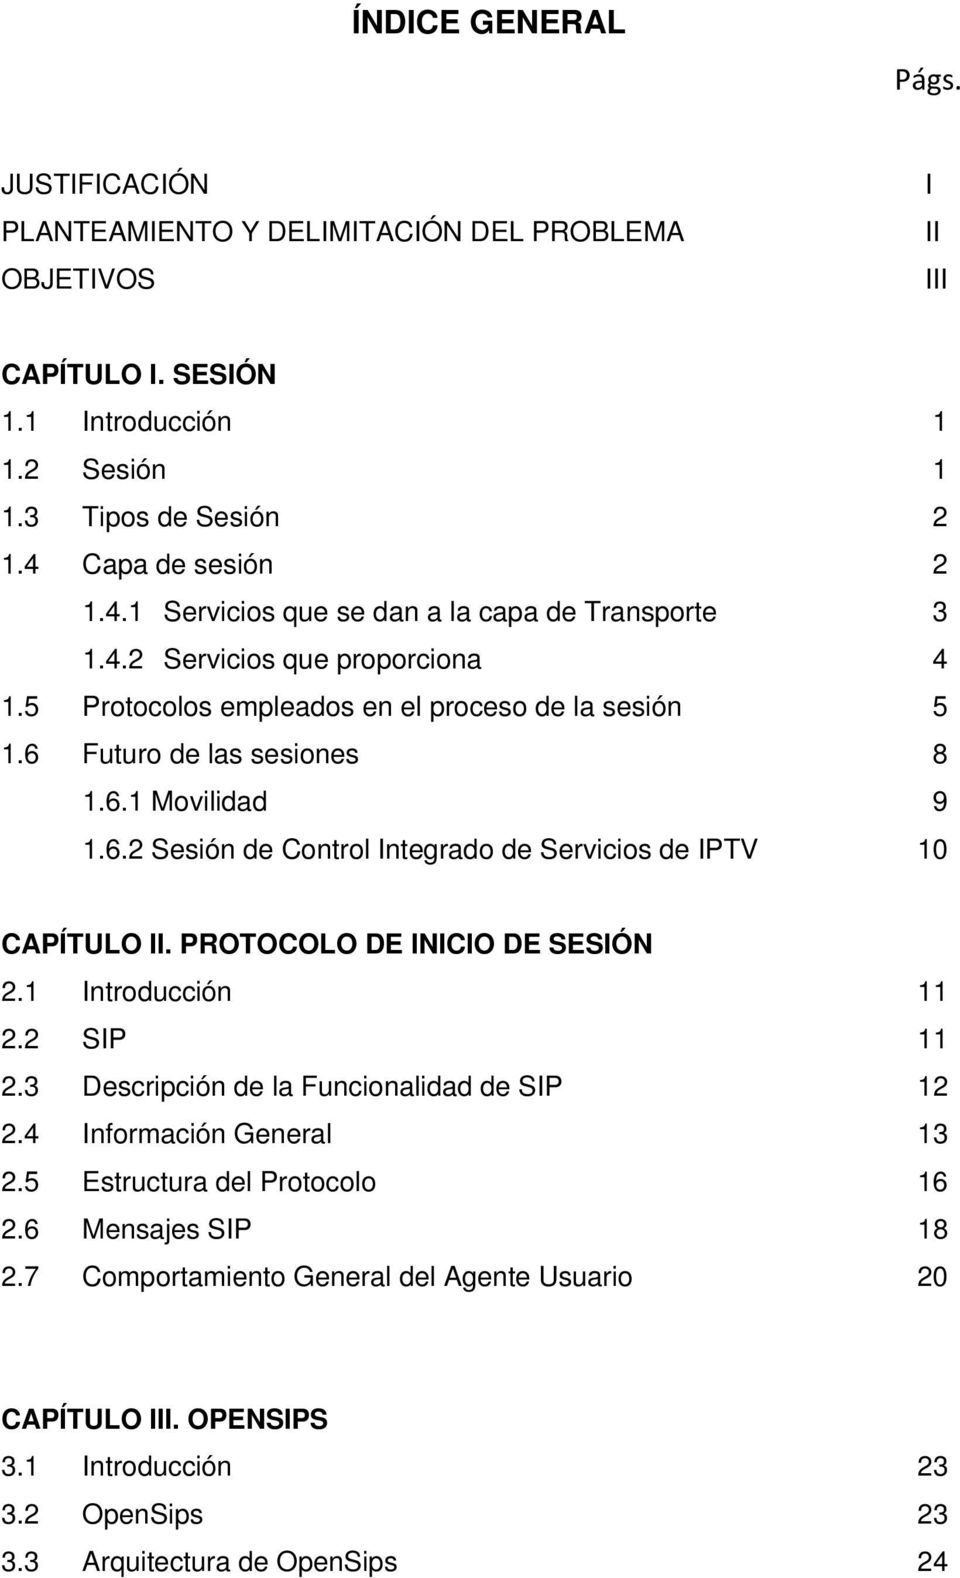 6.2 Sesión de Control Integrado de Servicios de IPTV 10 CAPÍTULO II. PROTOCOLO DE INICIO DE SESIÓN 2.1 Introducción 11 2.2 SIP 11 2.3 Descripción de la Funcionalidad de SIP 12 2.